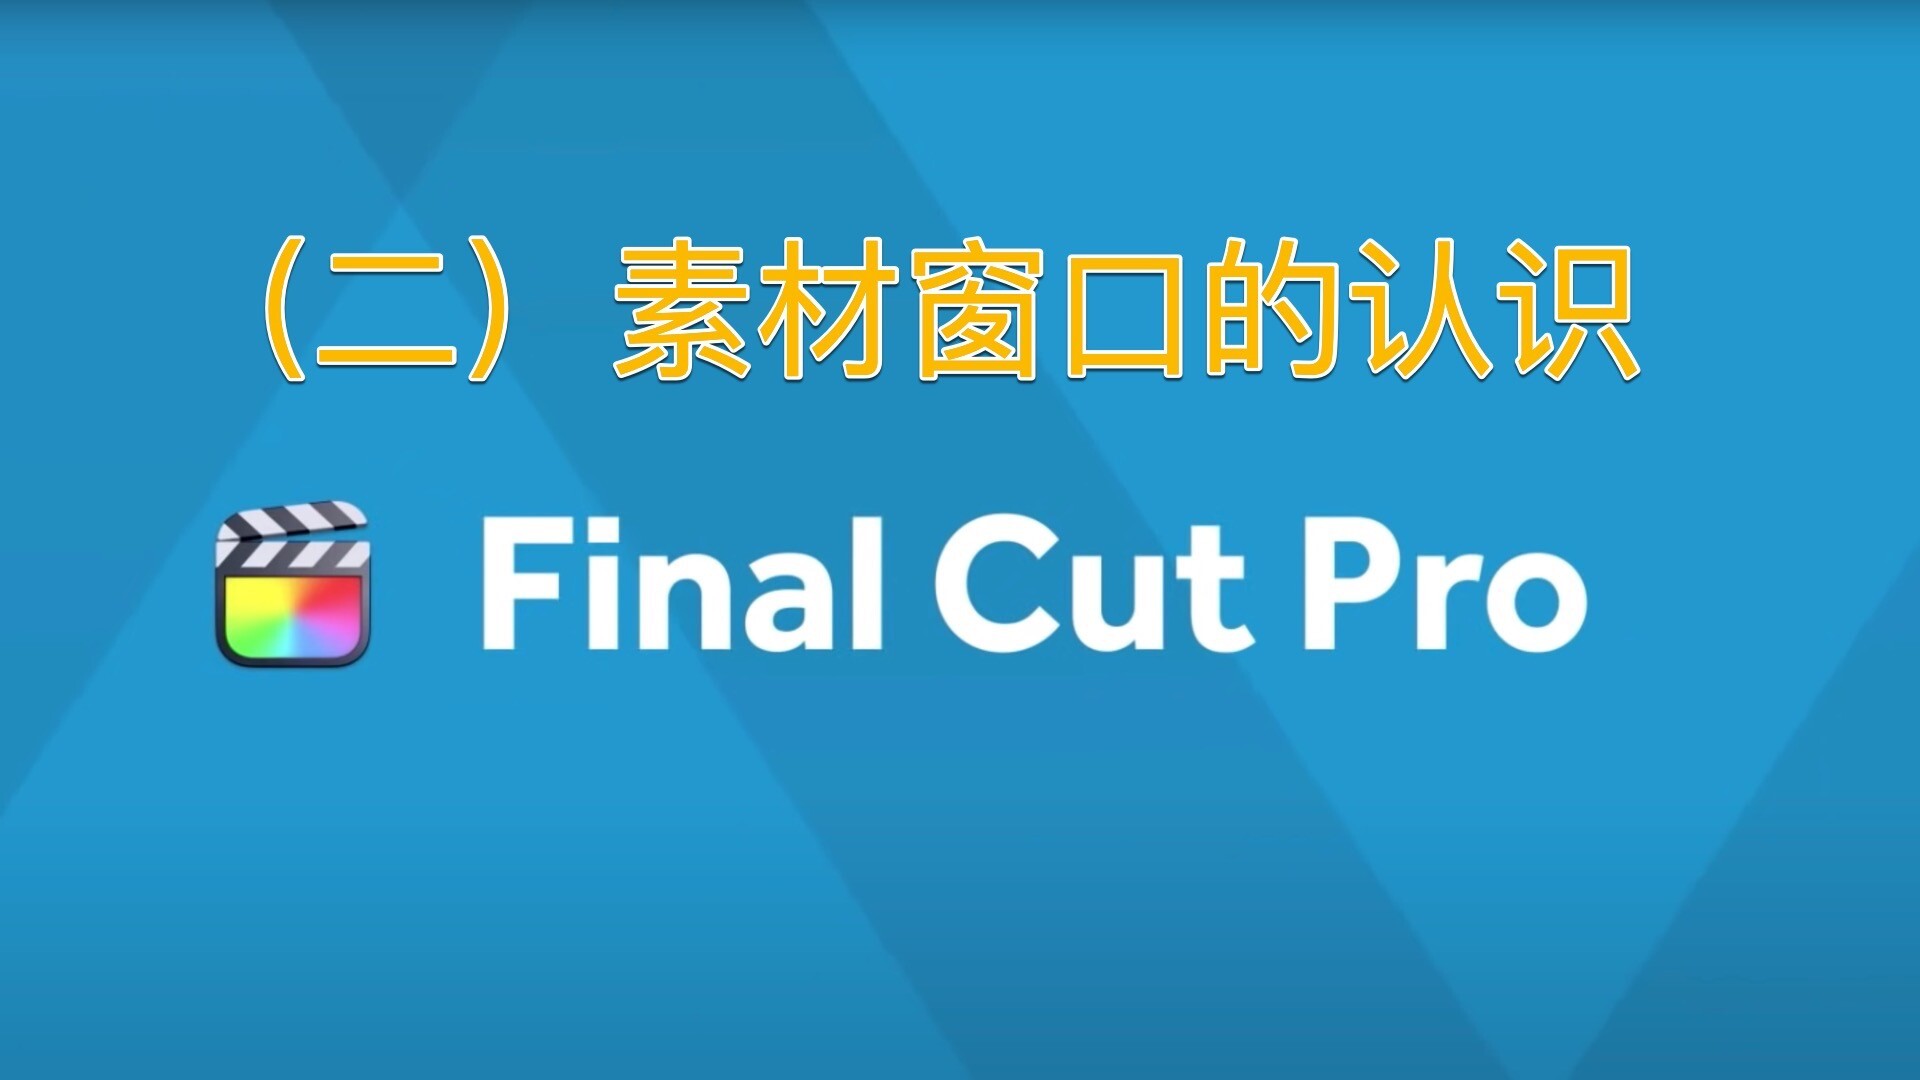 Final Cut Pro中文新手教程 (2) 素材窗口的认识